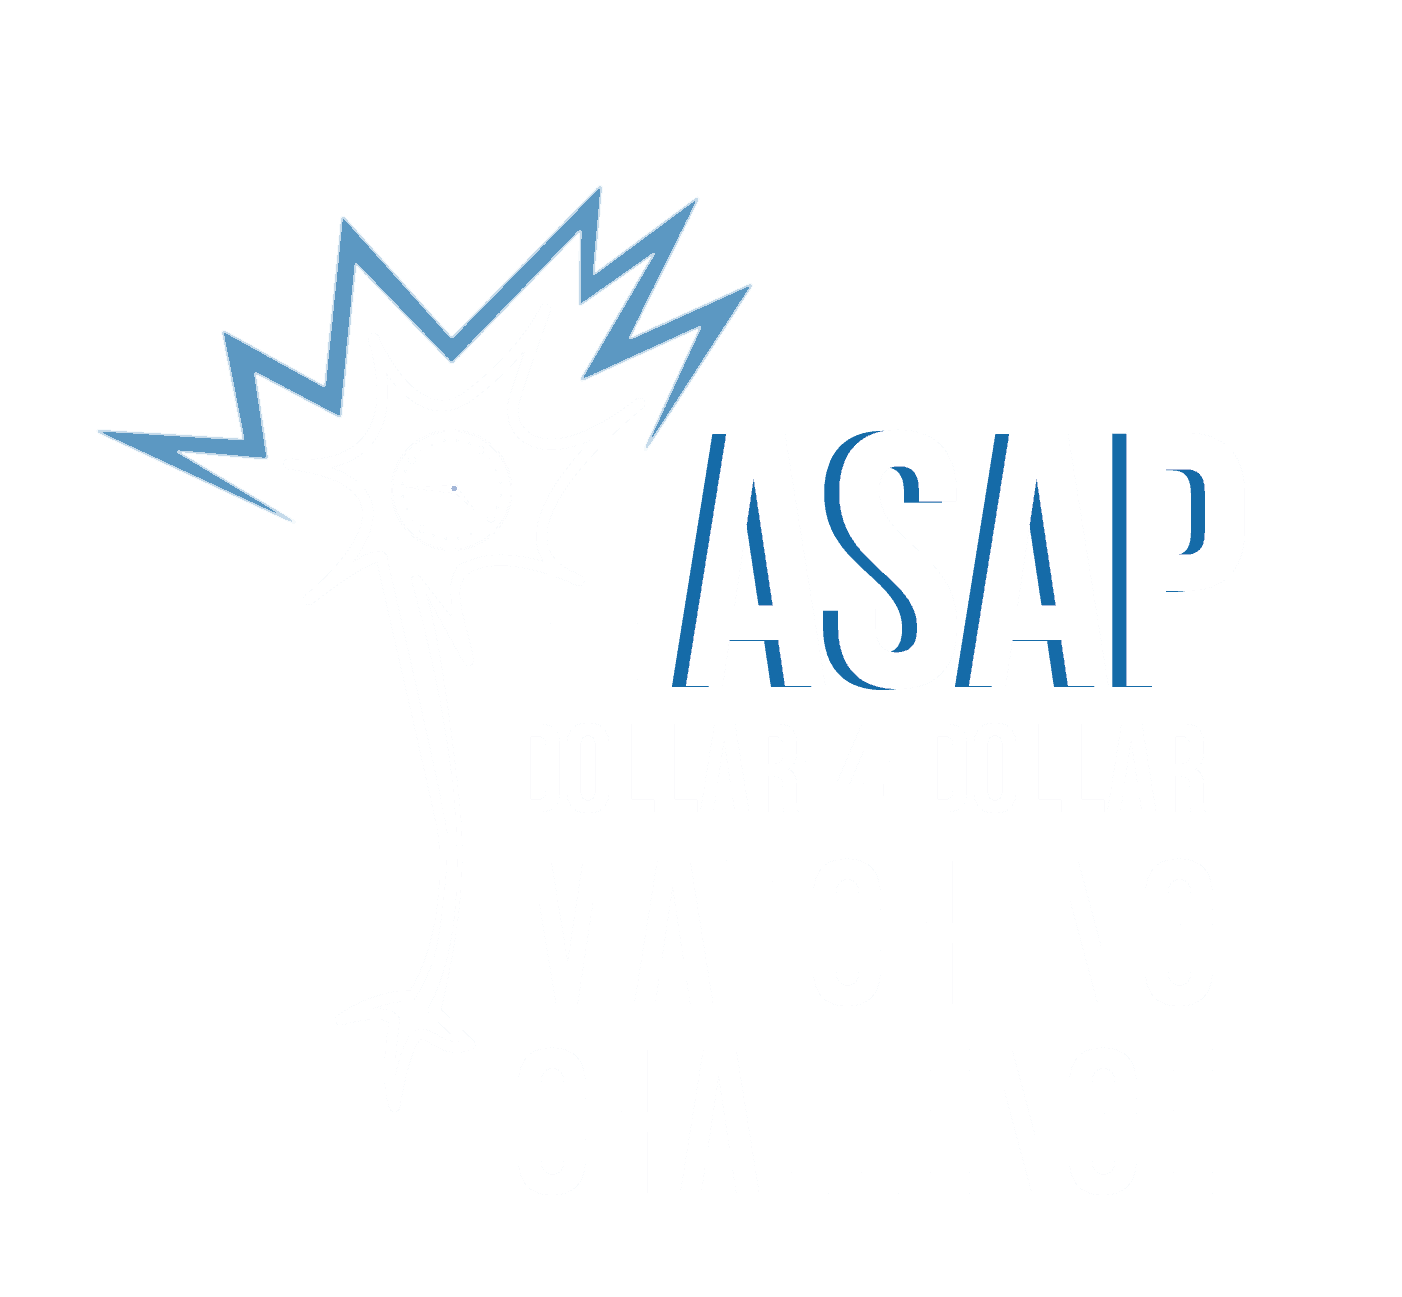 ASAP Dollar-4 美元匹配挑战